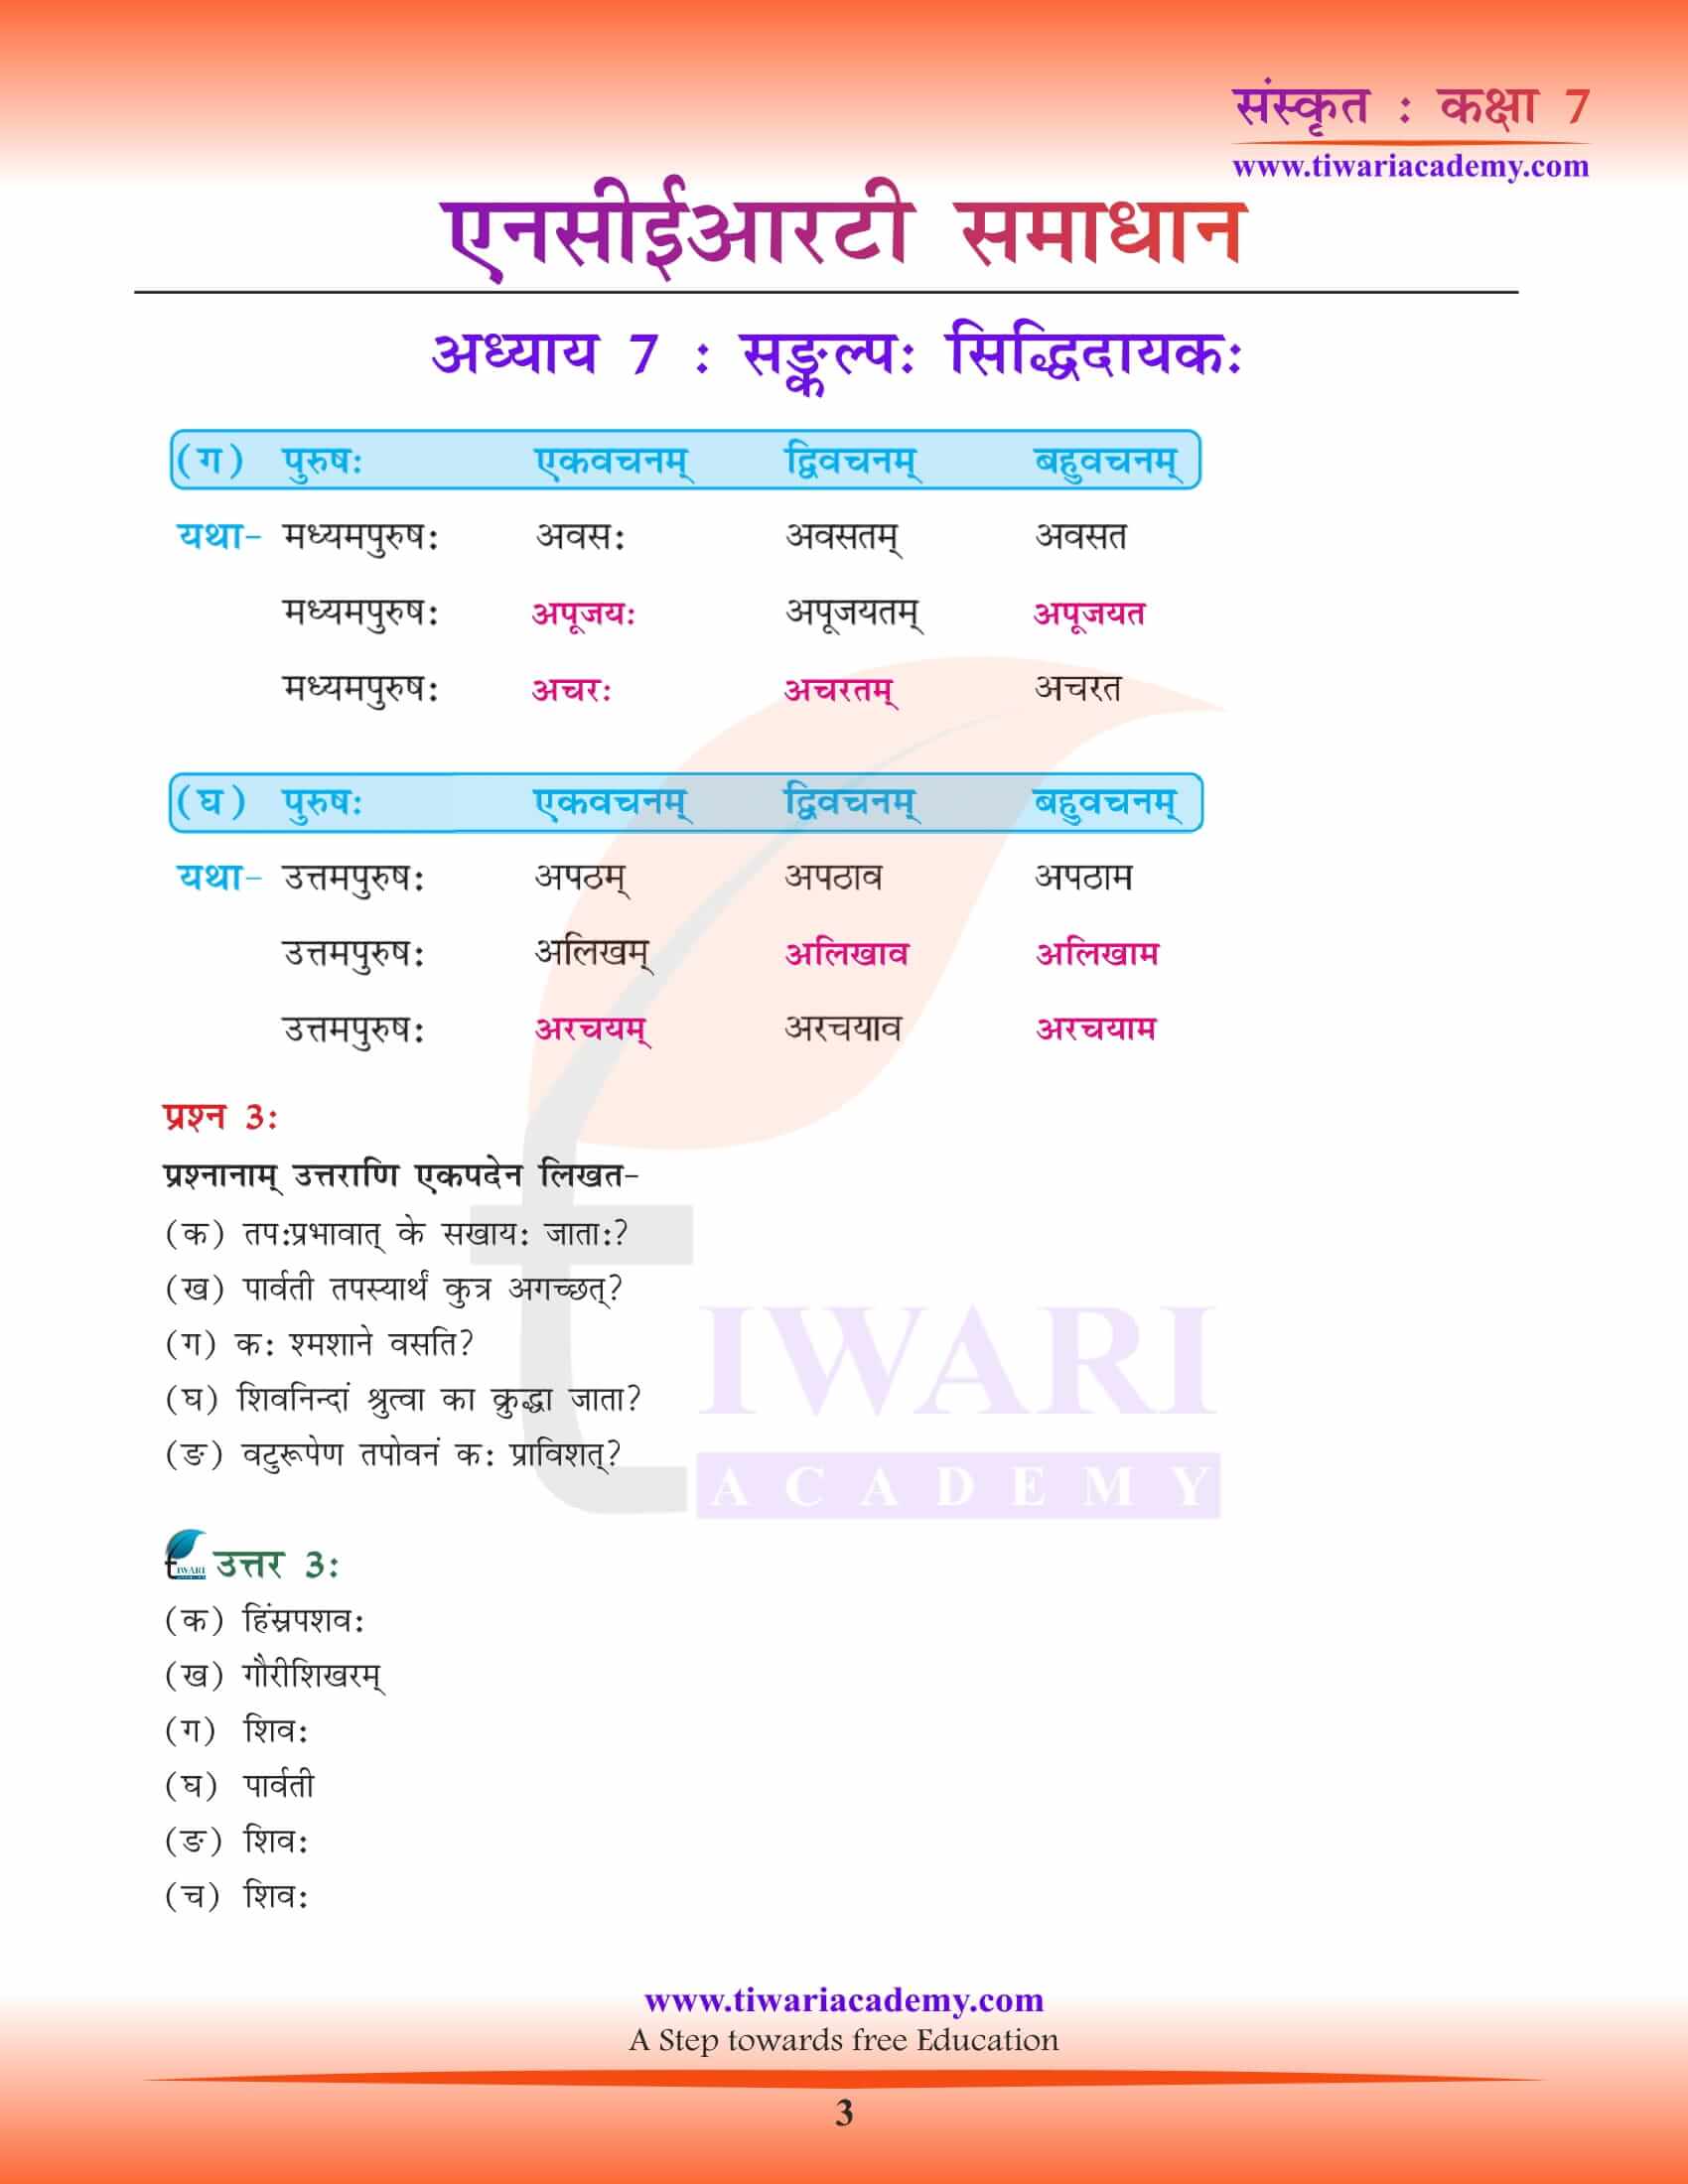 NCERT Solutions for Class 7 Sanskrit Chapter 7 free